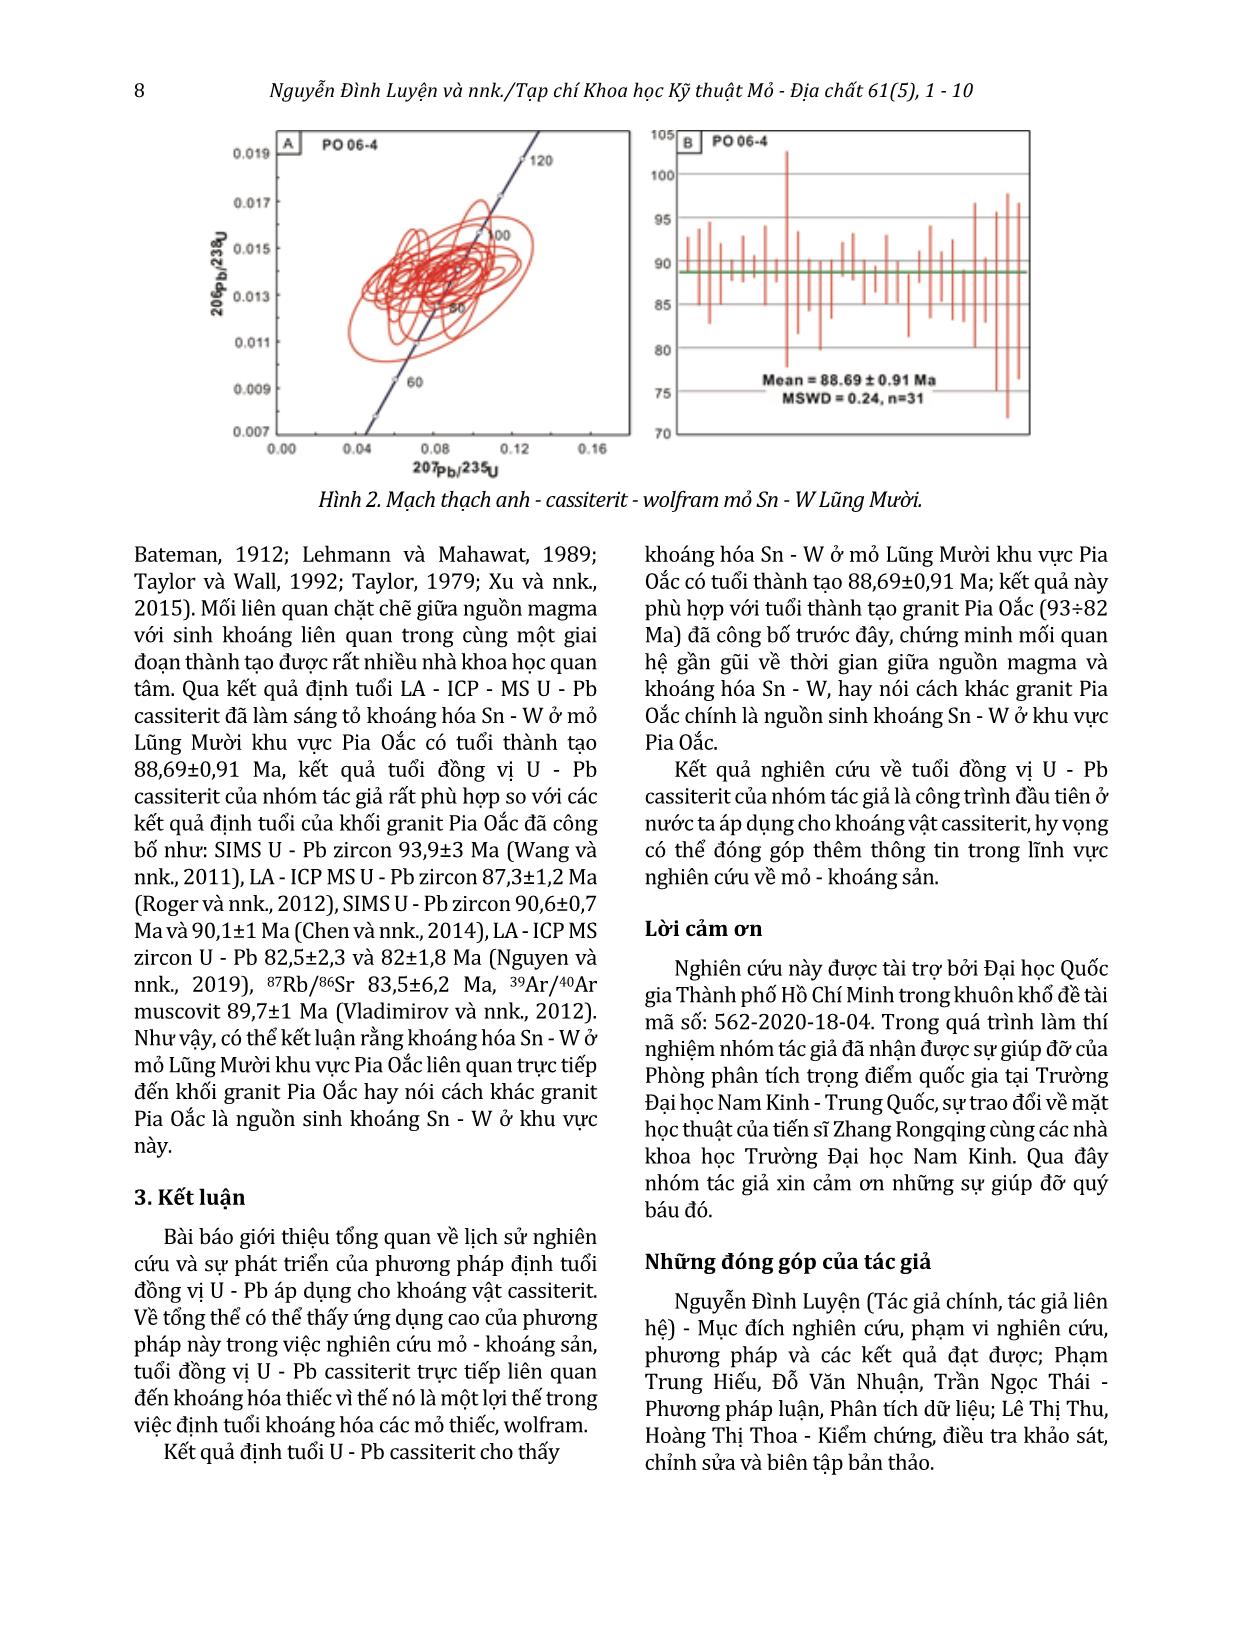 Khái quát về phương pháp định tuổi đồng vị U - Pb trong cassiterit. Áp dụng xác định tuổi khoáng hóa Sn - W mỏ Lũng Mười khu vực Pia Oắc, Cao Bằng trang 8